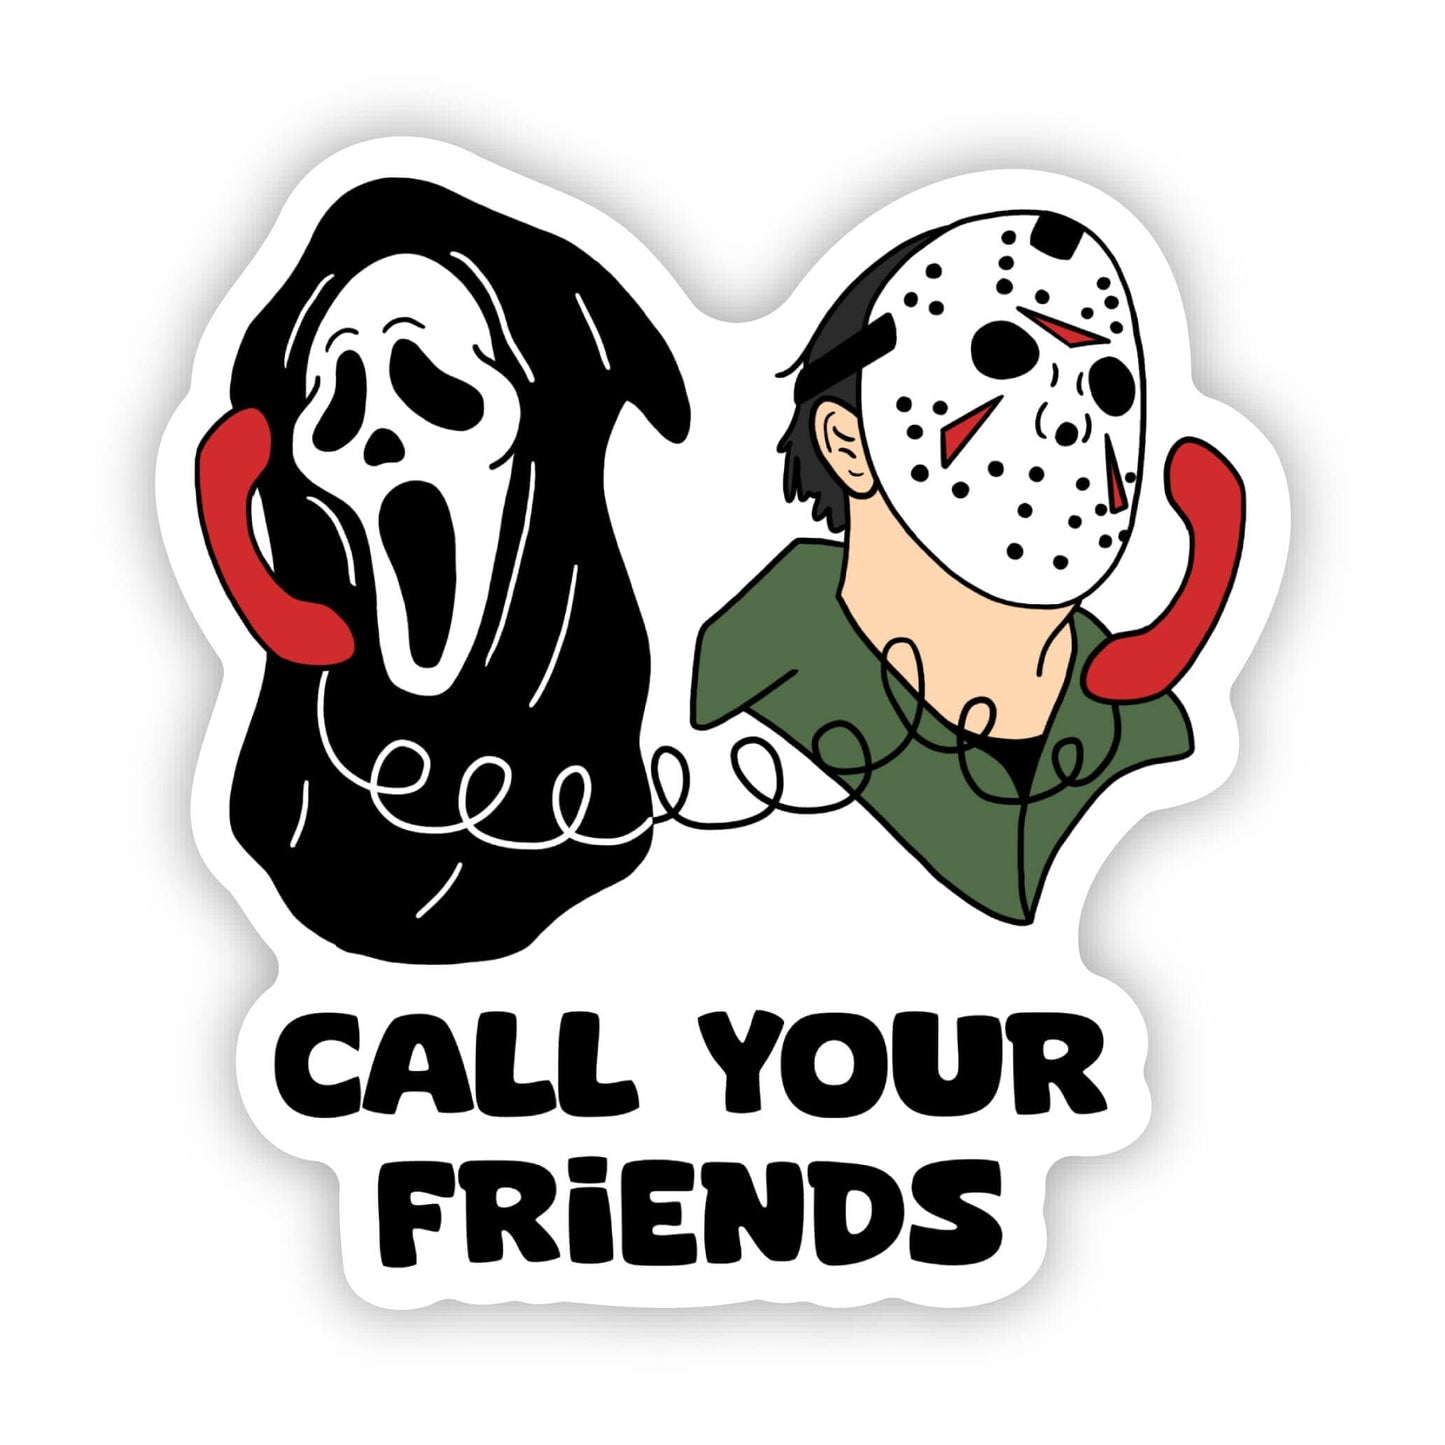 "Call your friends" horror fan sticker